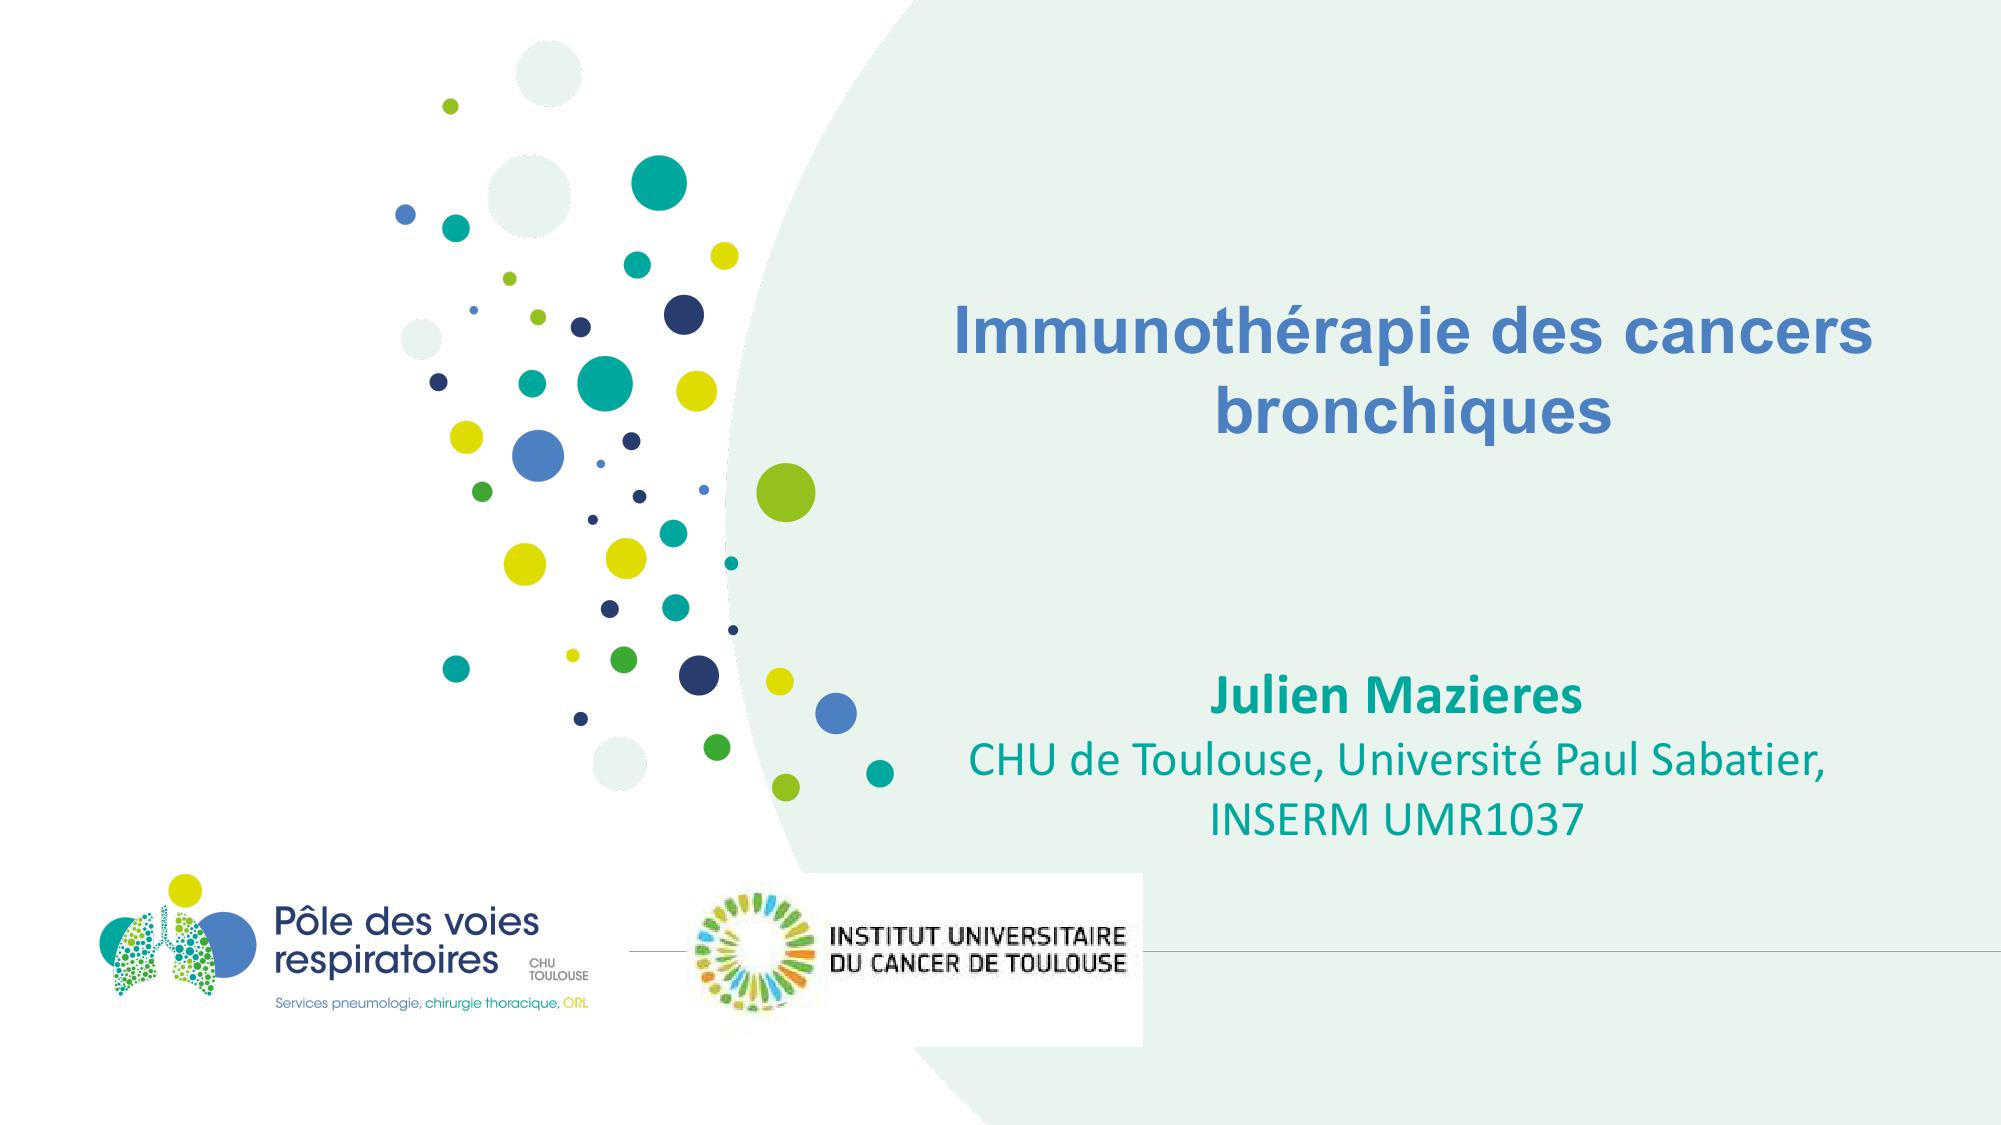 Immunothérapie des cancers bronchiques. Julien Mazieres